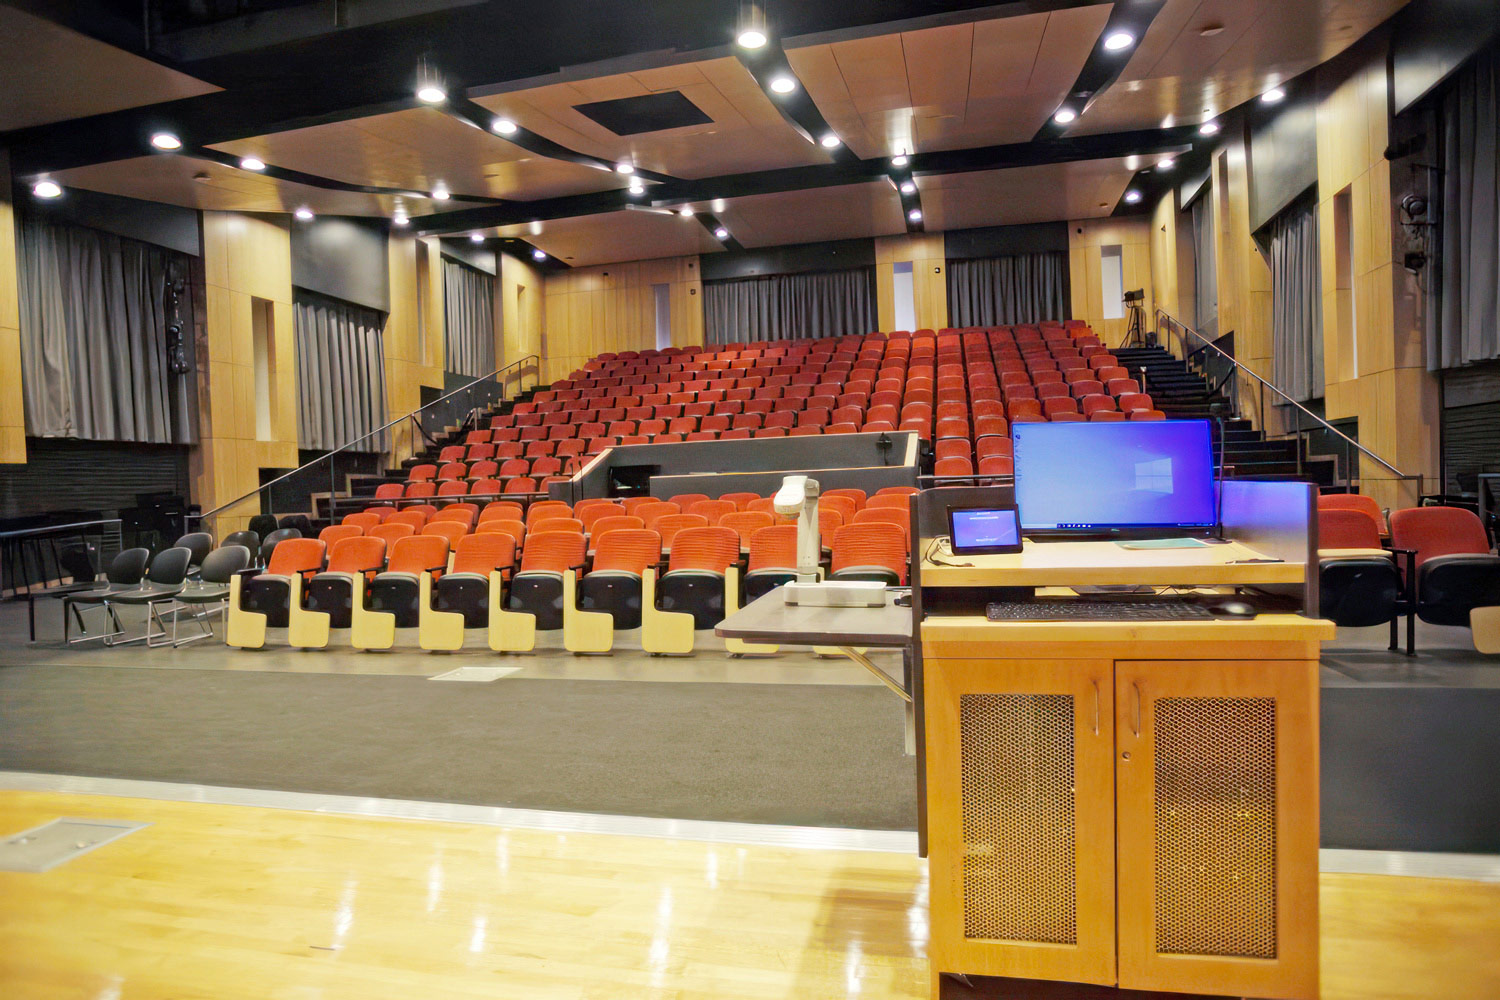 Sur le Northern Wake Campus, l'amphithéâtre de 430 m² dispose d'une estrade et de 275 places assises. Équipé de capacités vidéo, audio, et d'éclairage de l'estrade et de l'environnement de qualité cinéma, l'amphithéâtre accueille des présentations, des pièces de théâtre, des concours de chant, des émissions télévisées locales, et beaucoup d'autres activités. Reproductions autorisées par le Wake Technical Community College.